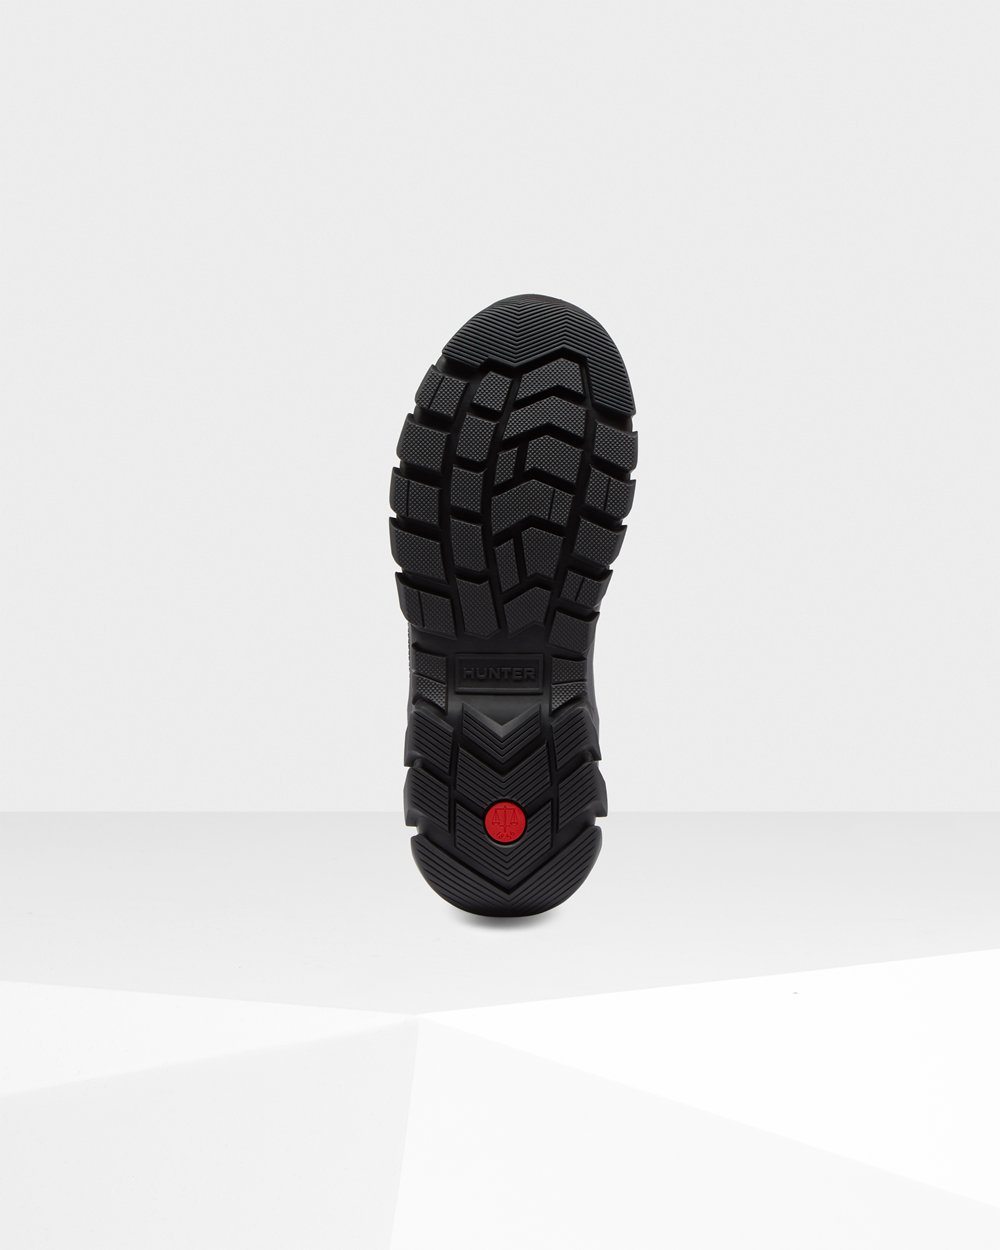 Womens Snow Boots - Hunter Original Insulated Short (64UNPZIER) - Black